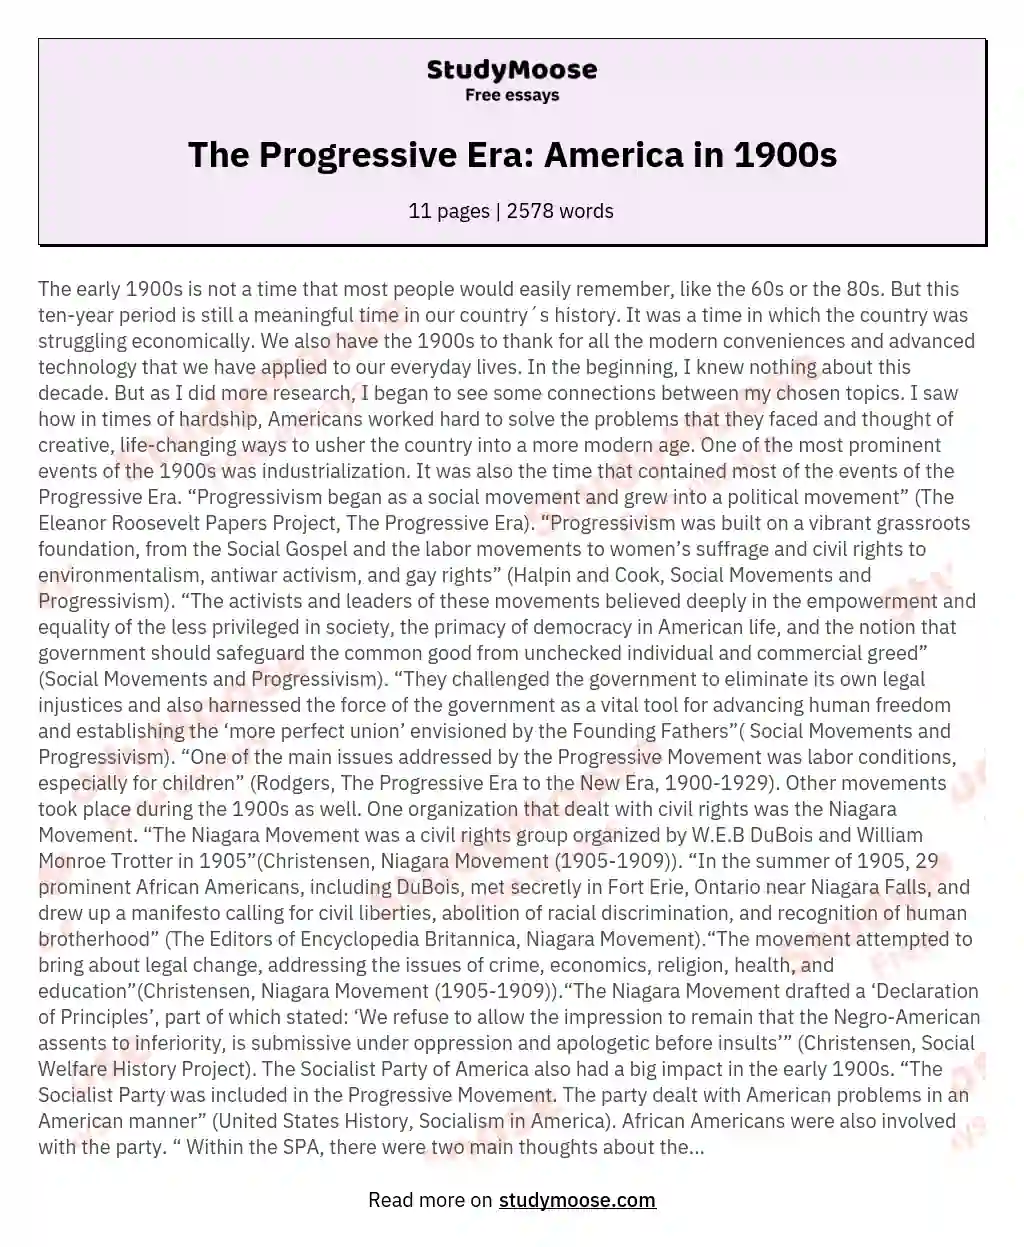 The Progressive Era: America in 1900s essay